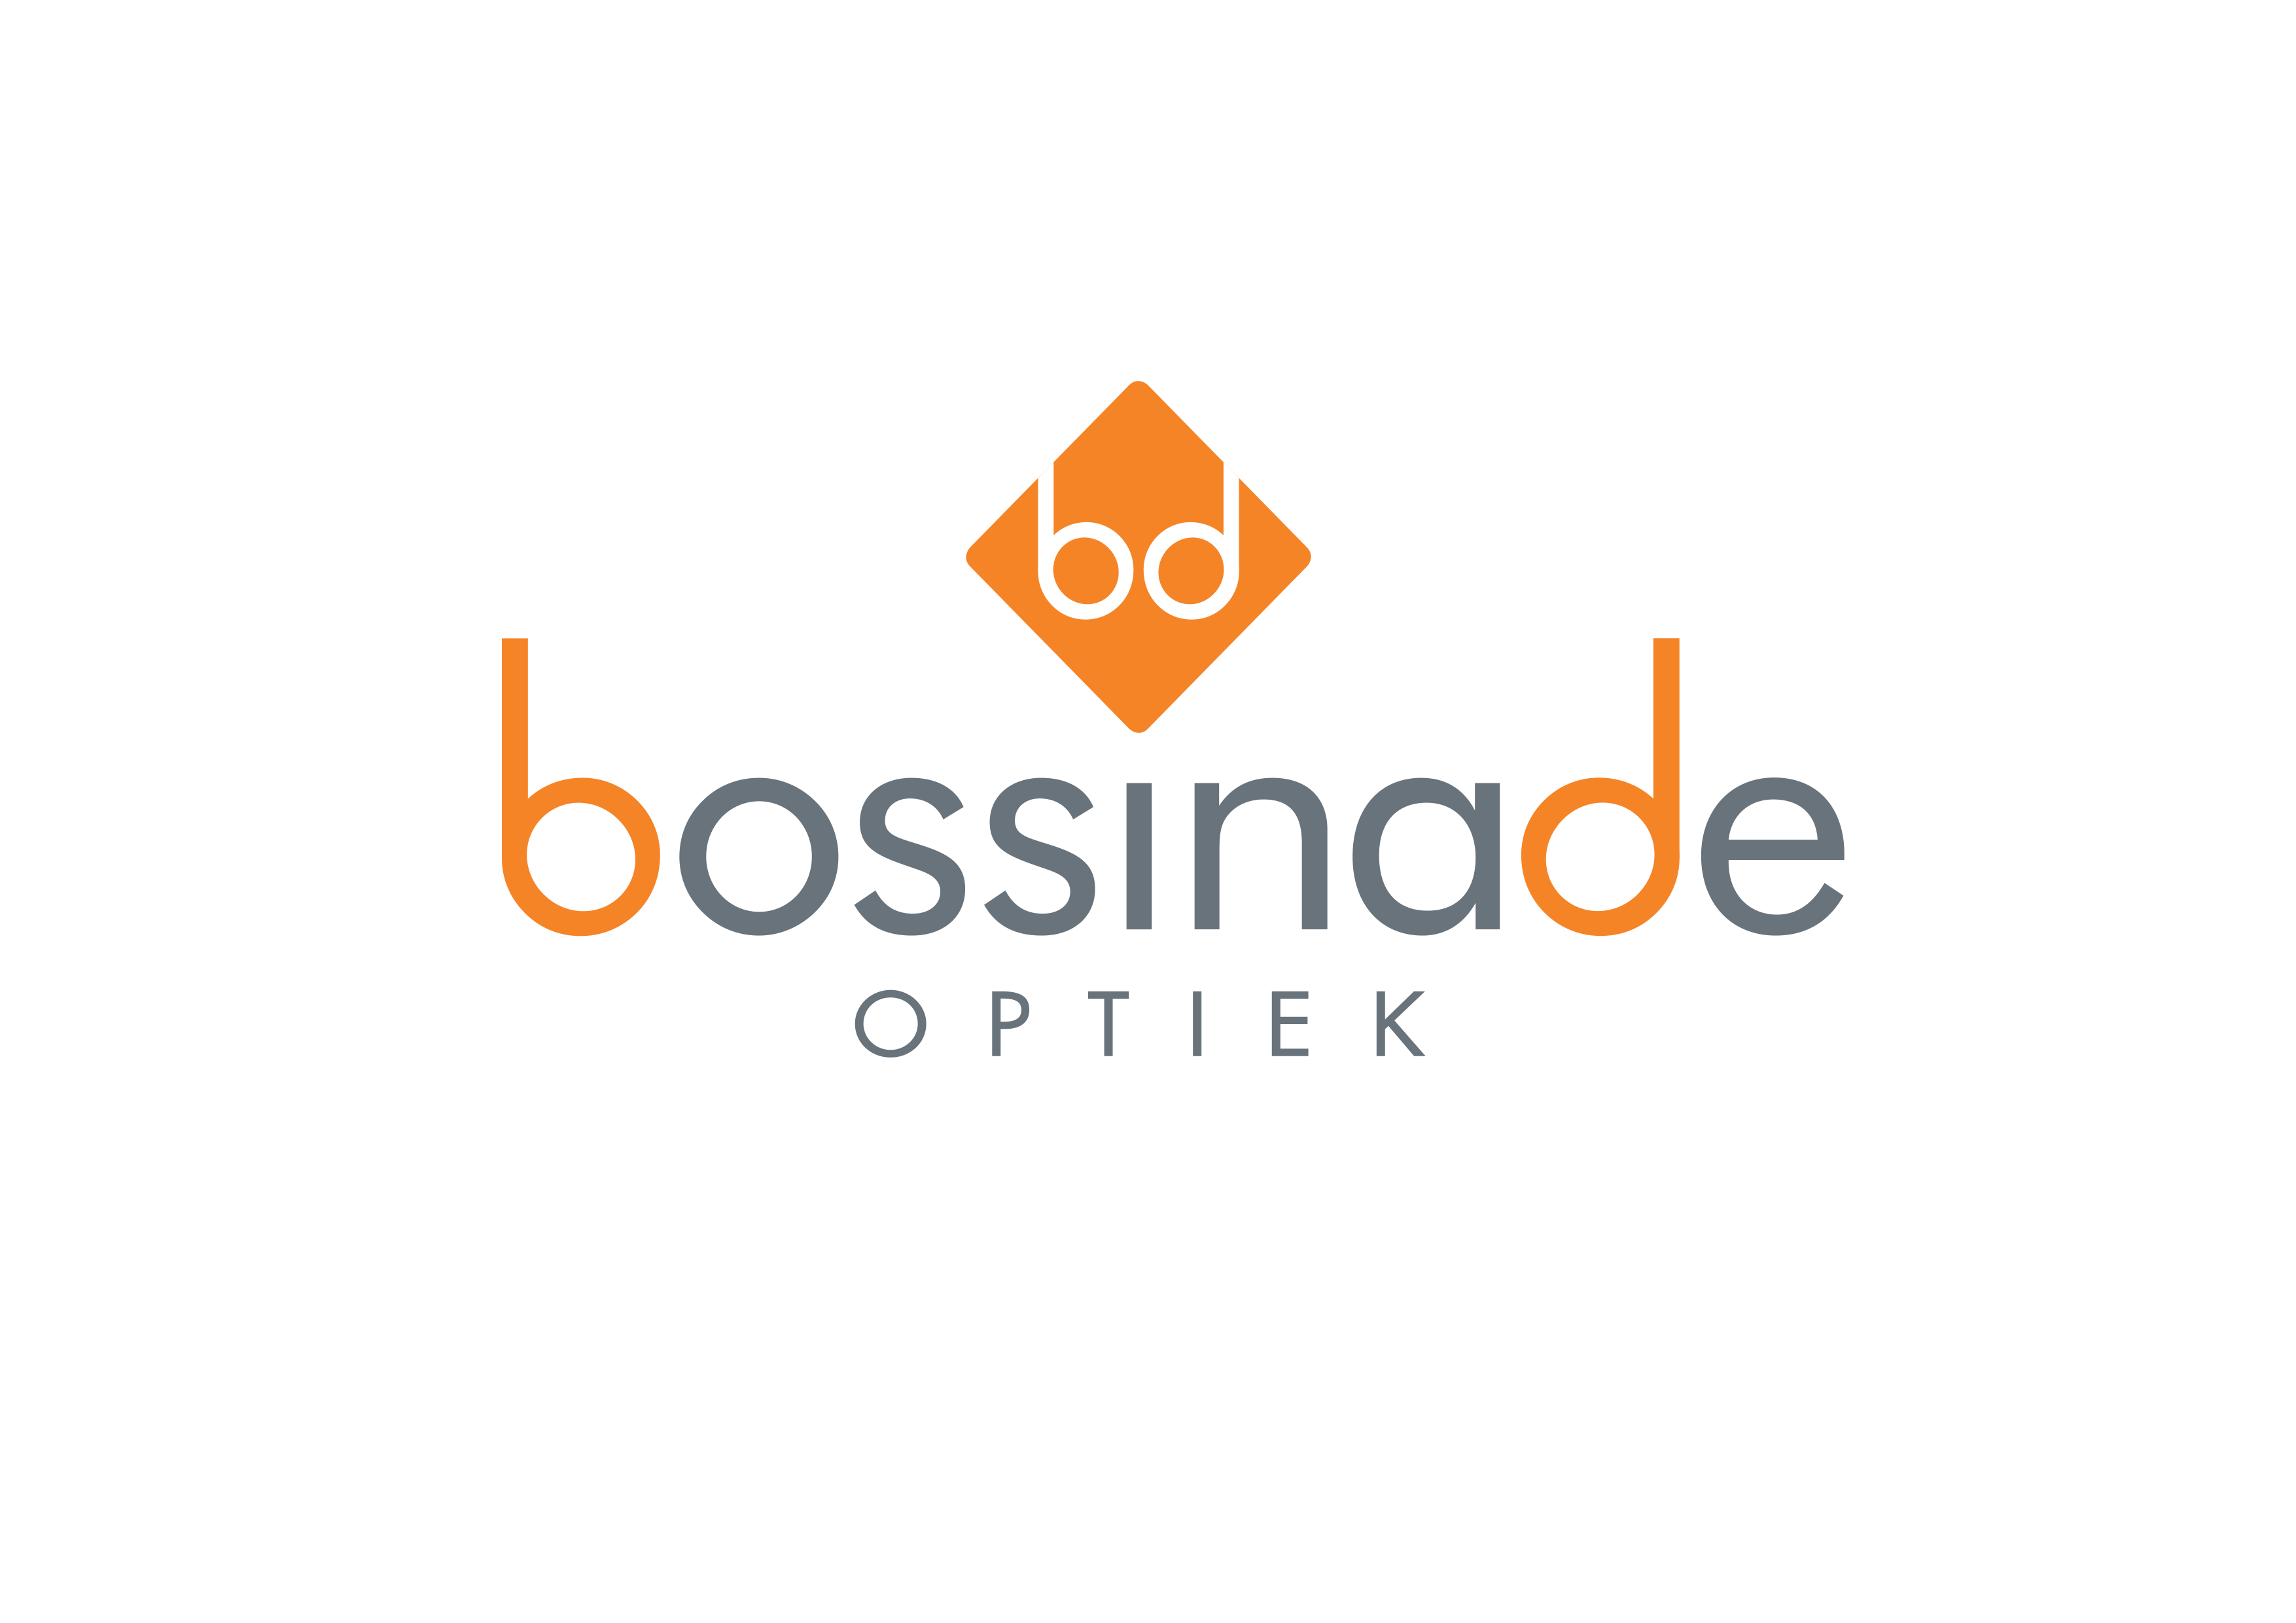  logo BOSSINADE